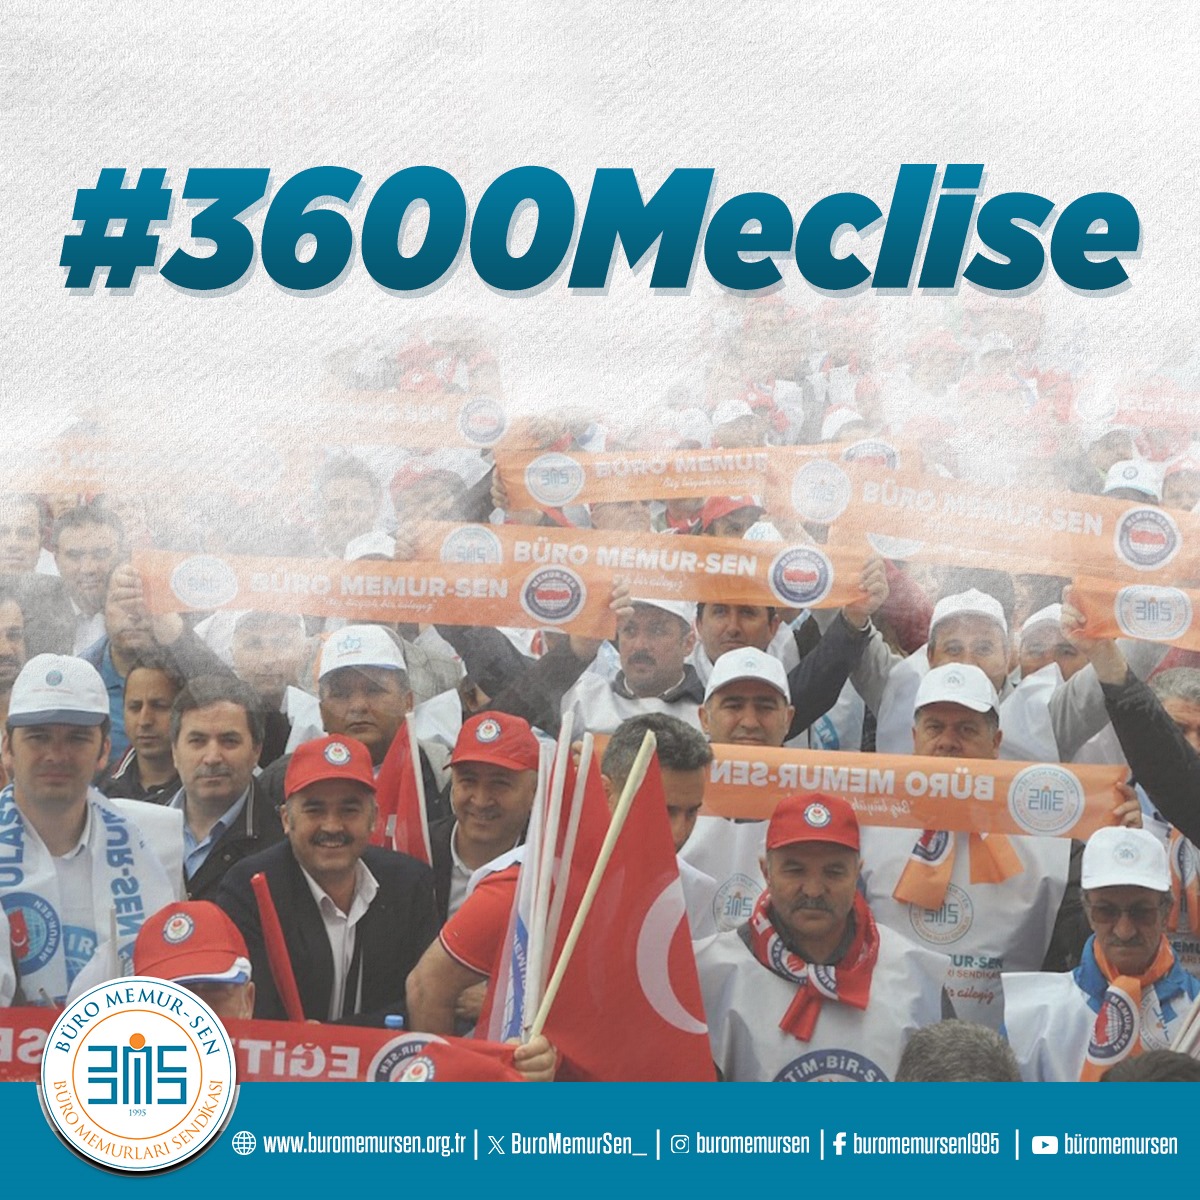 Bir kez daha hatırlatıyoruz: #3600Meclise